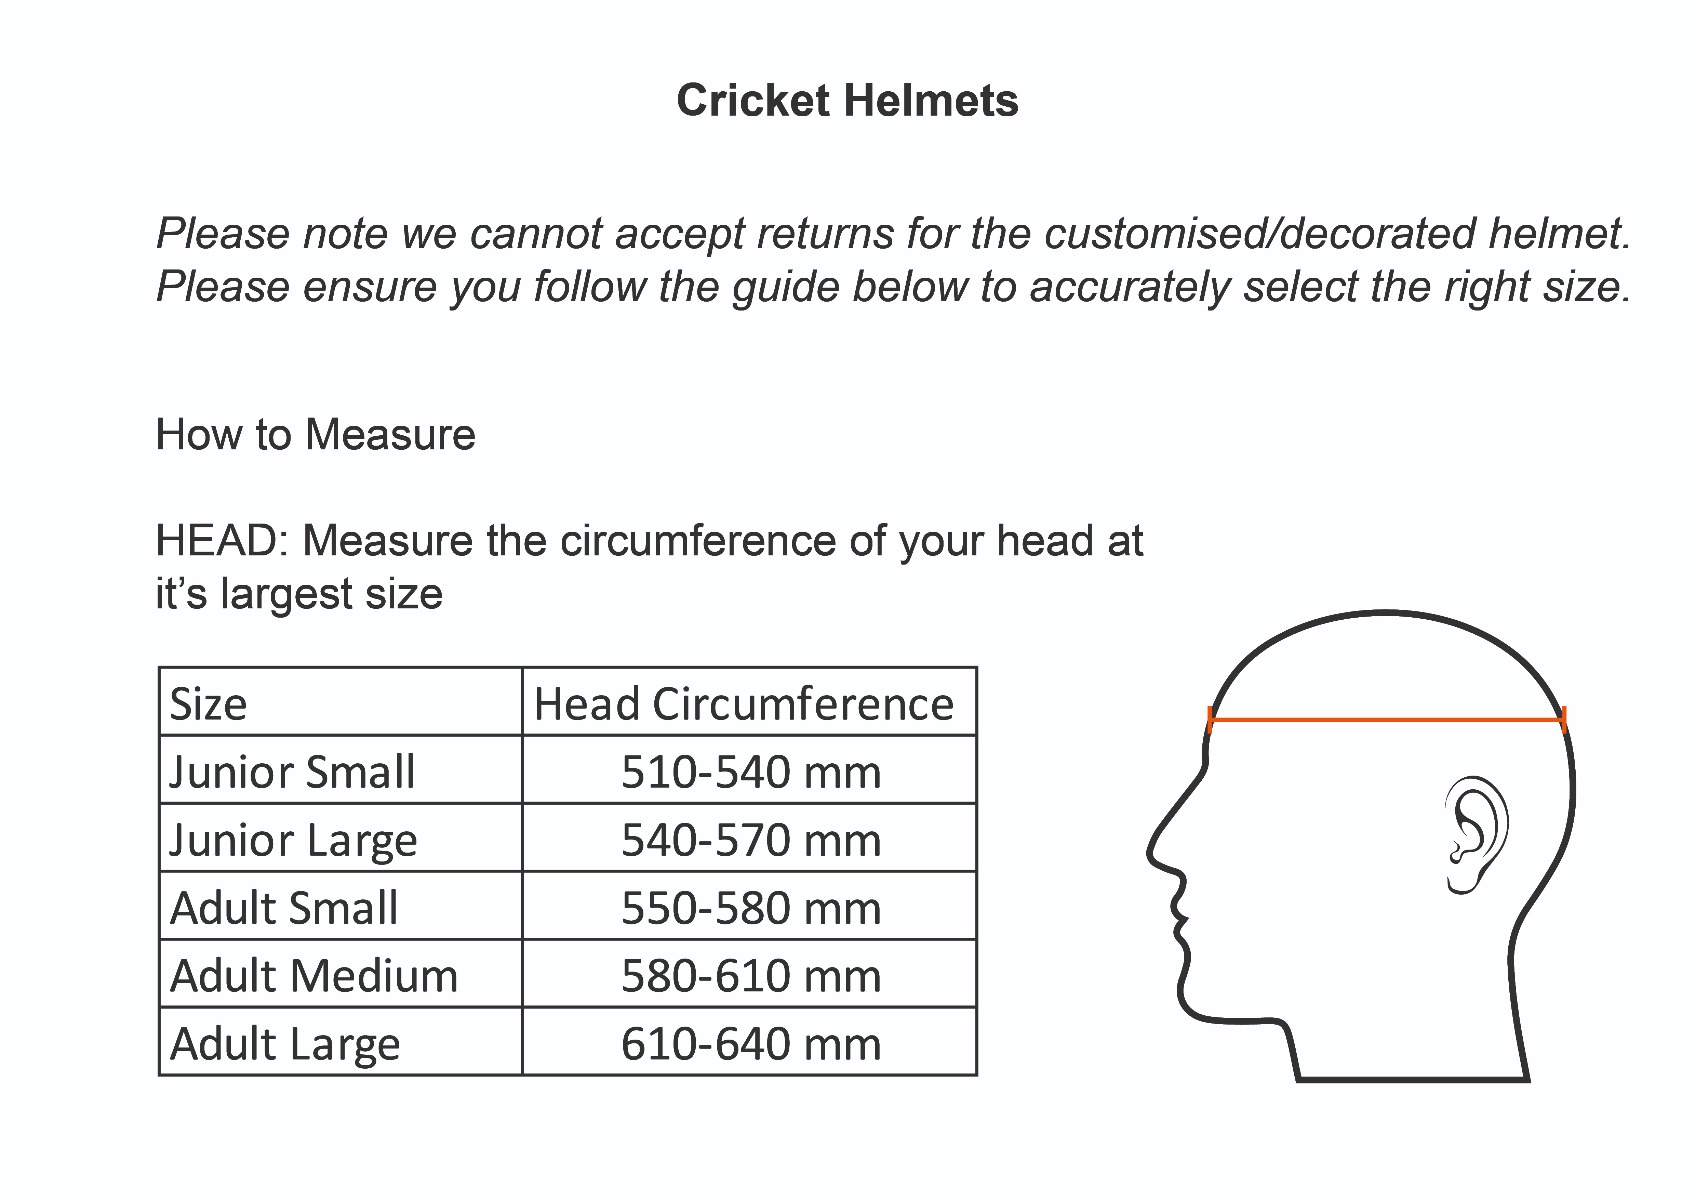 Masuri Helmet Size Guide